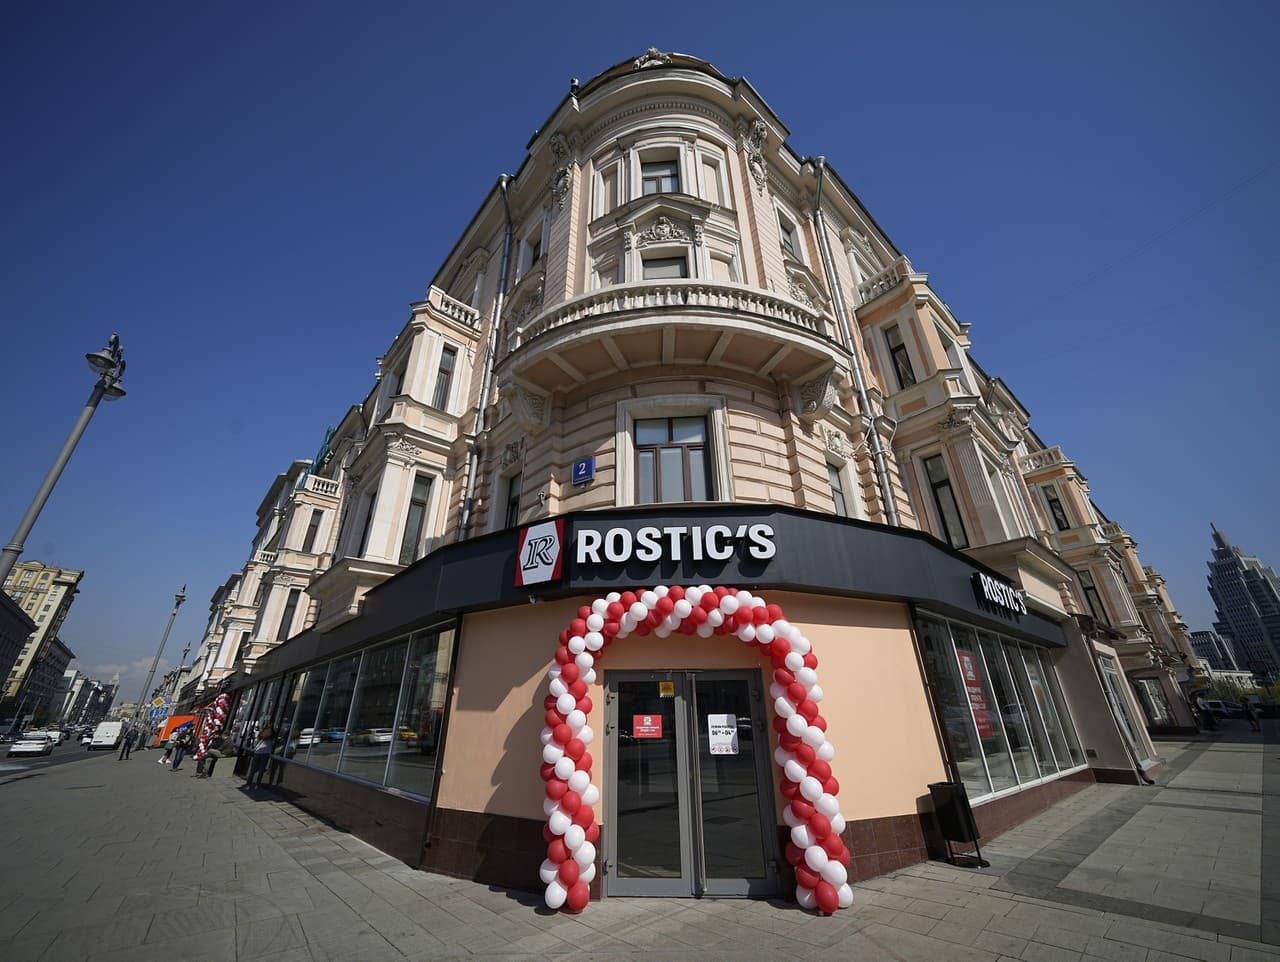 Reštaurácia s rýchlym občerstvením Rostic's, ktorú otvorili v Moskve